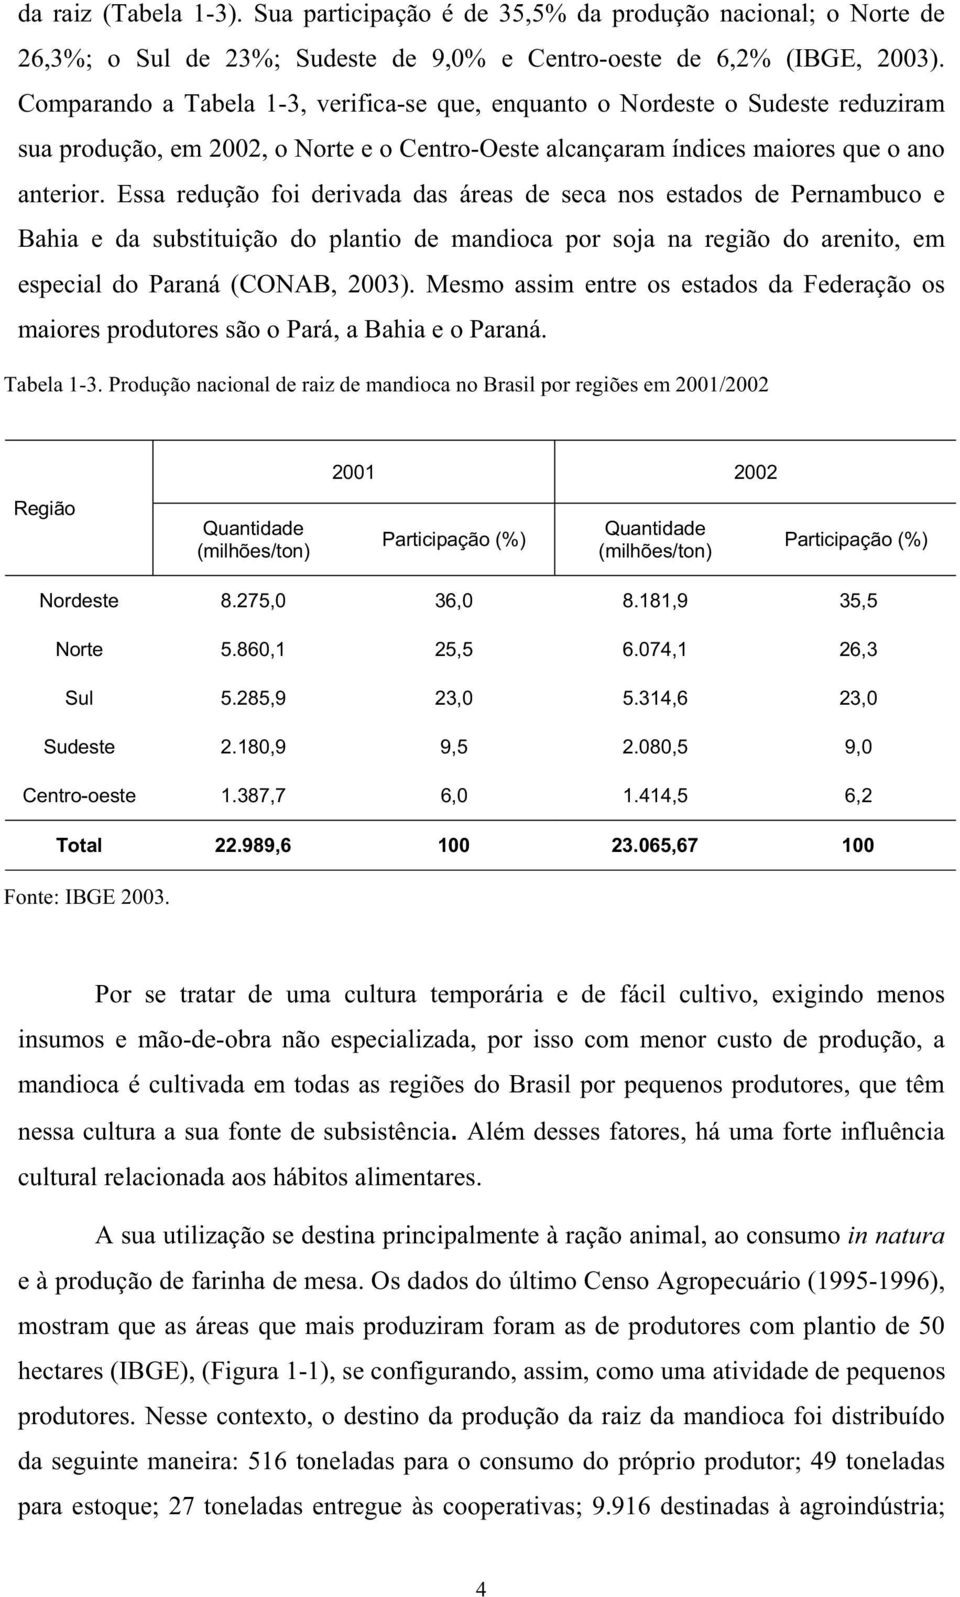 Essa redução foi derivada das áreas de seca nos estados de Pernambuco e Bahia e da substituição do plantio de mandioca por soja na região do arenito, em especial do Paraná (CONAB, 2003).